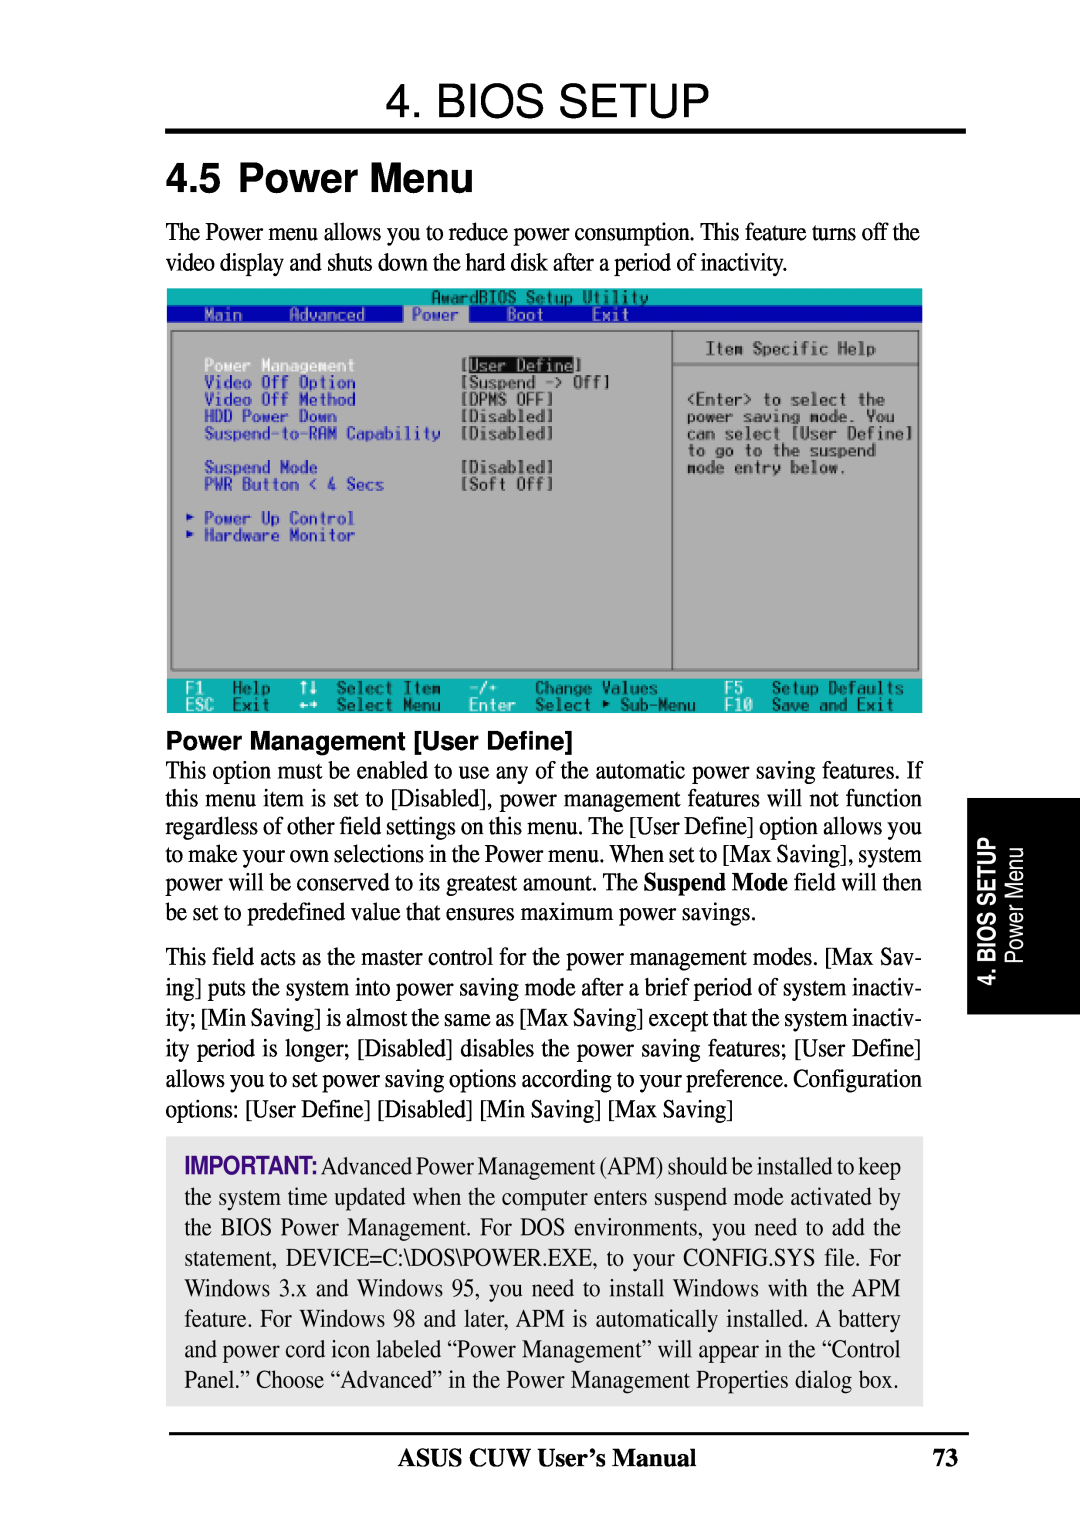 Asus 810 user manual Power Menu, Power Management User Define, PowerMenu, Bios Setup, Biossetup, ASUS CUW User’s Manual 